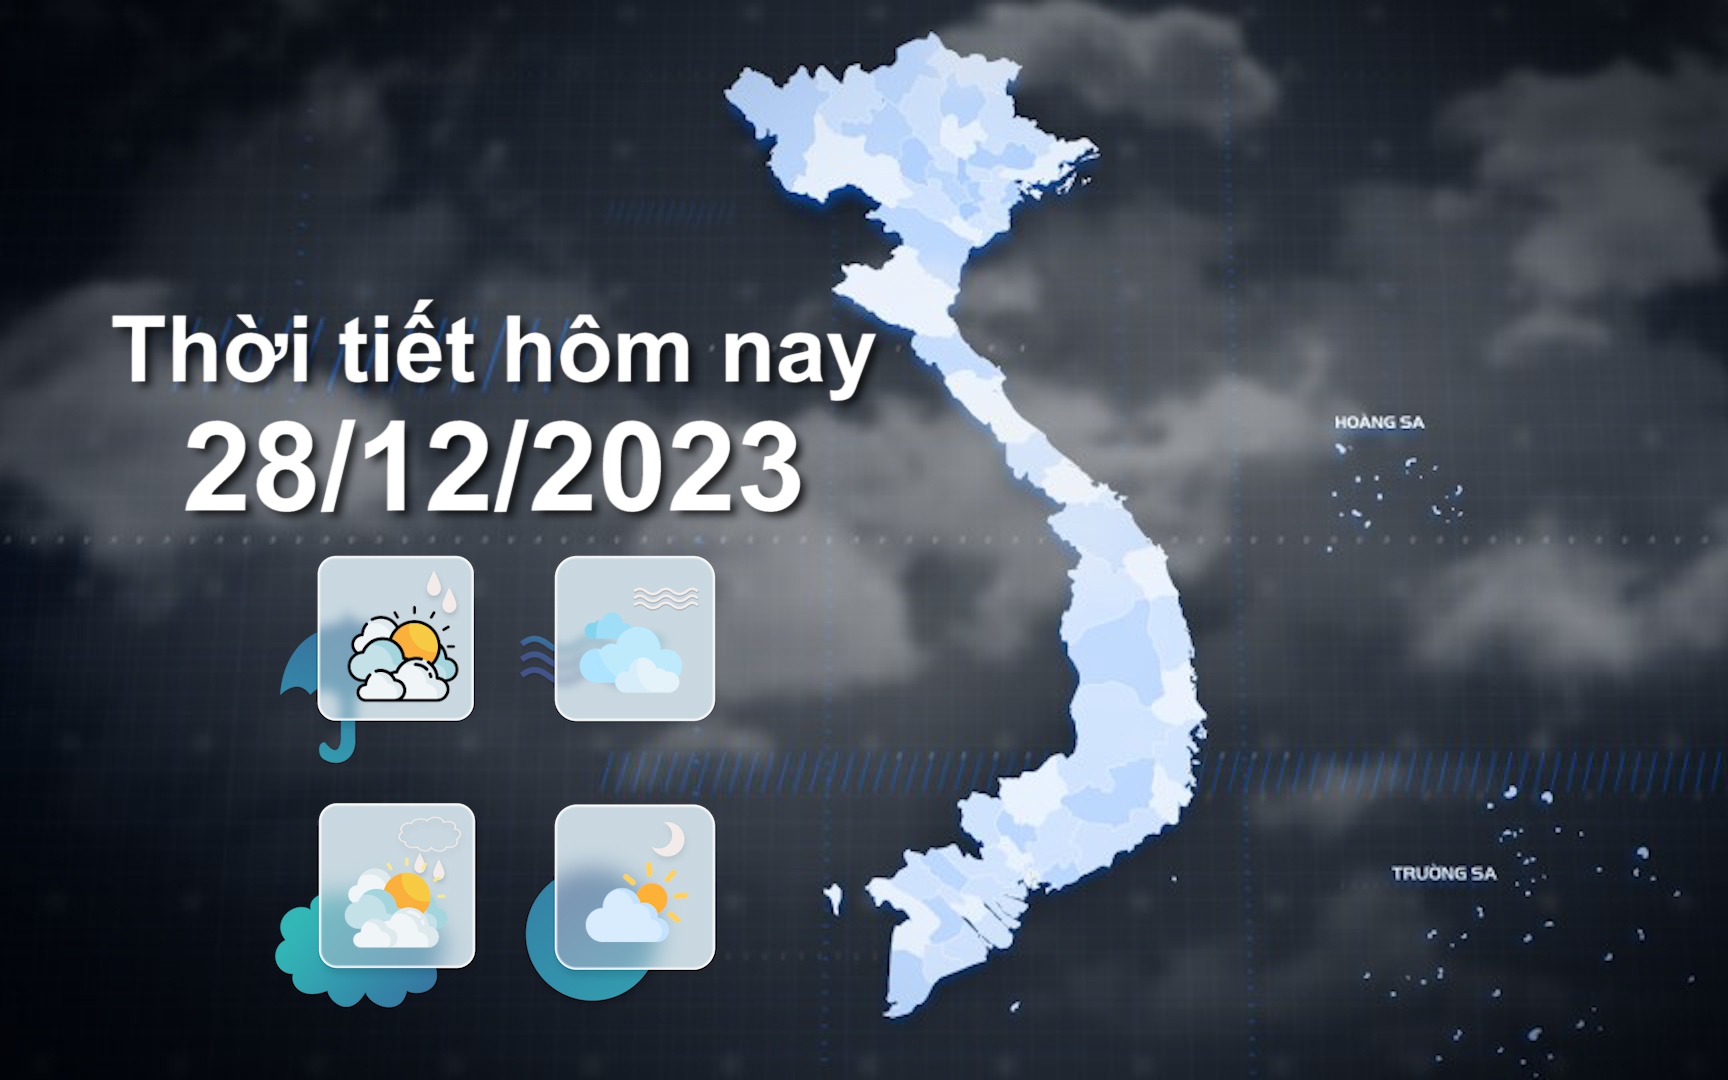  Thời tiết hôm nay 28/12/2023: Bắc Bộ trời rét, Quảng Trị đến Khánh Hòa mưa vừa đến mưa to